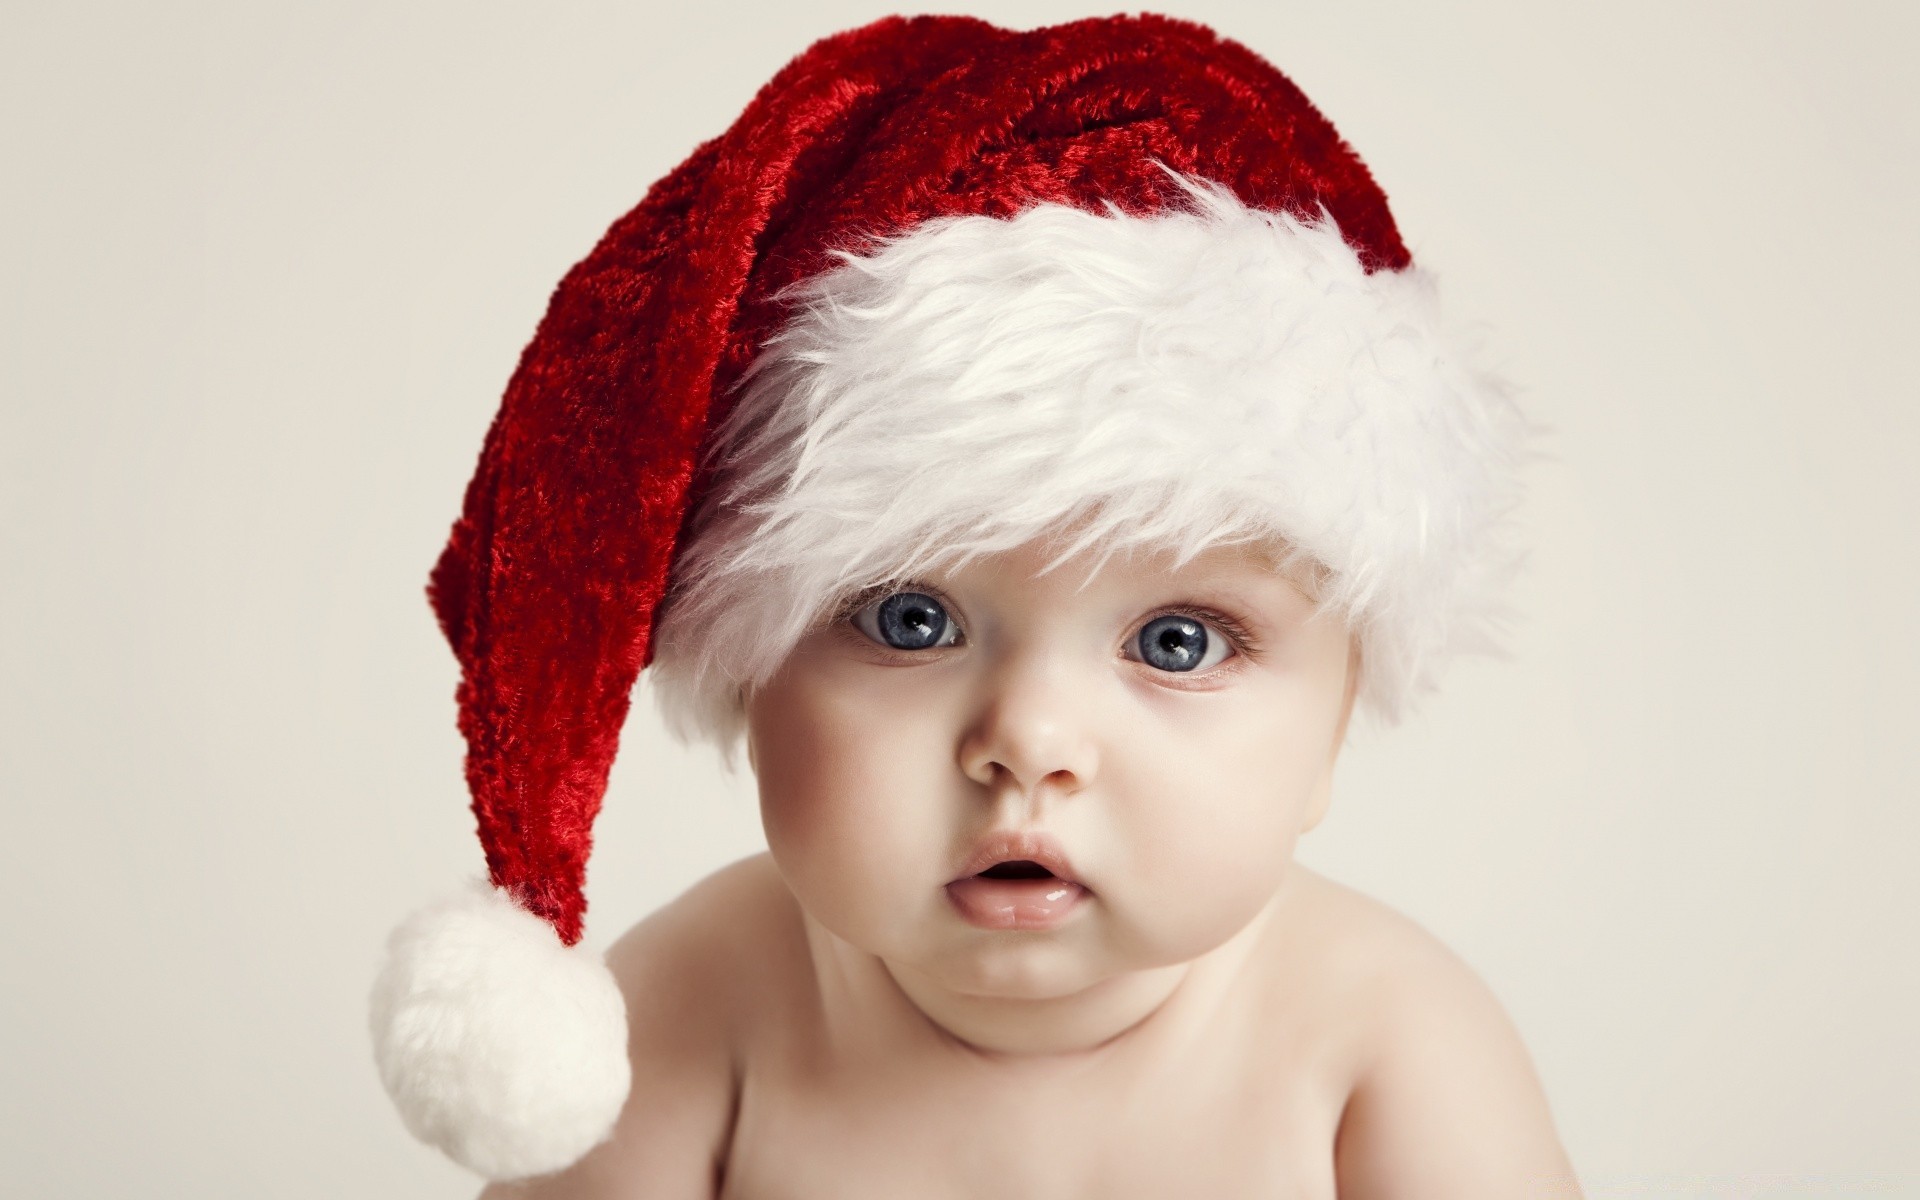 рождество ребенок милые мало невинность ребенок удовольствие портрет крышка смешно один радость драгоценные малыш